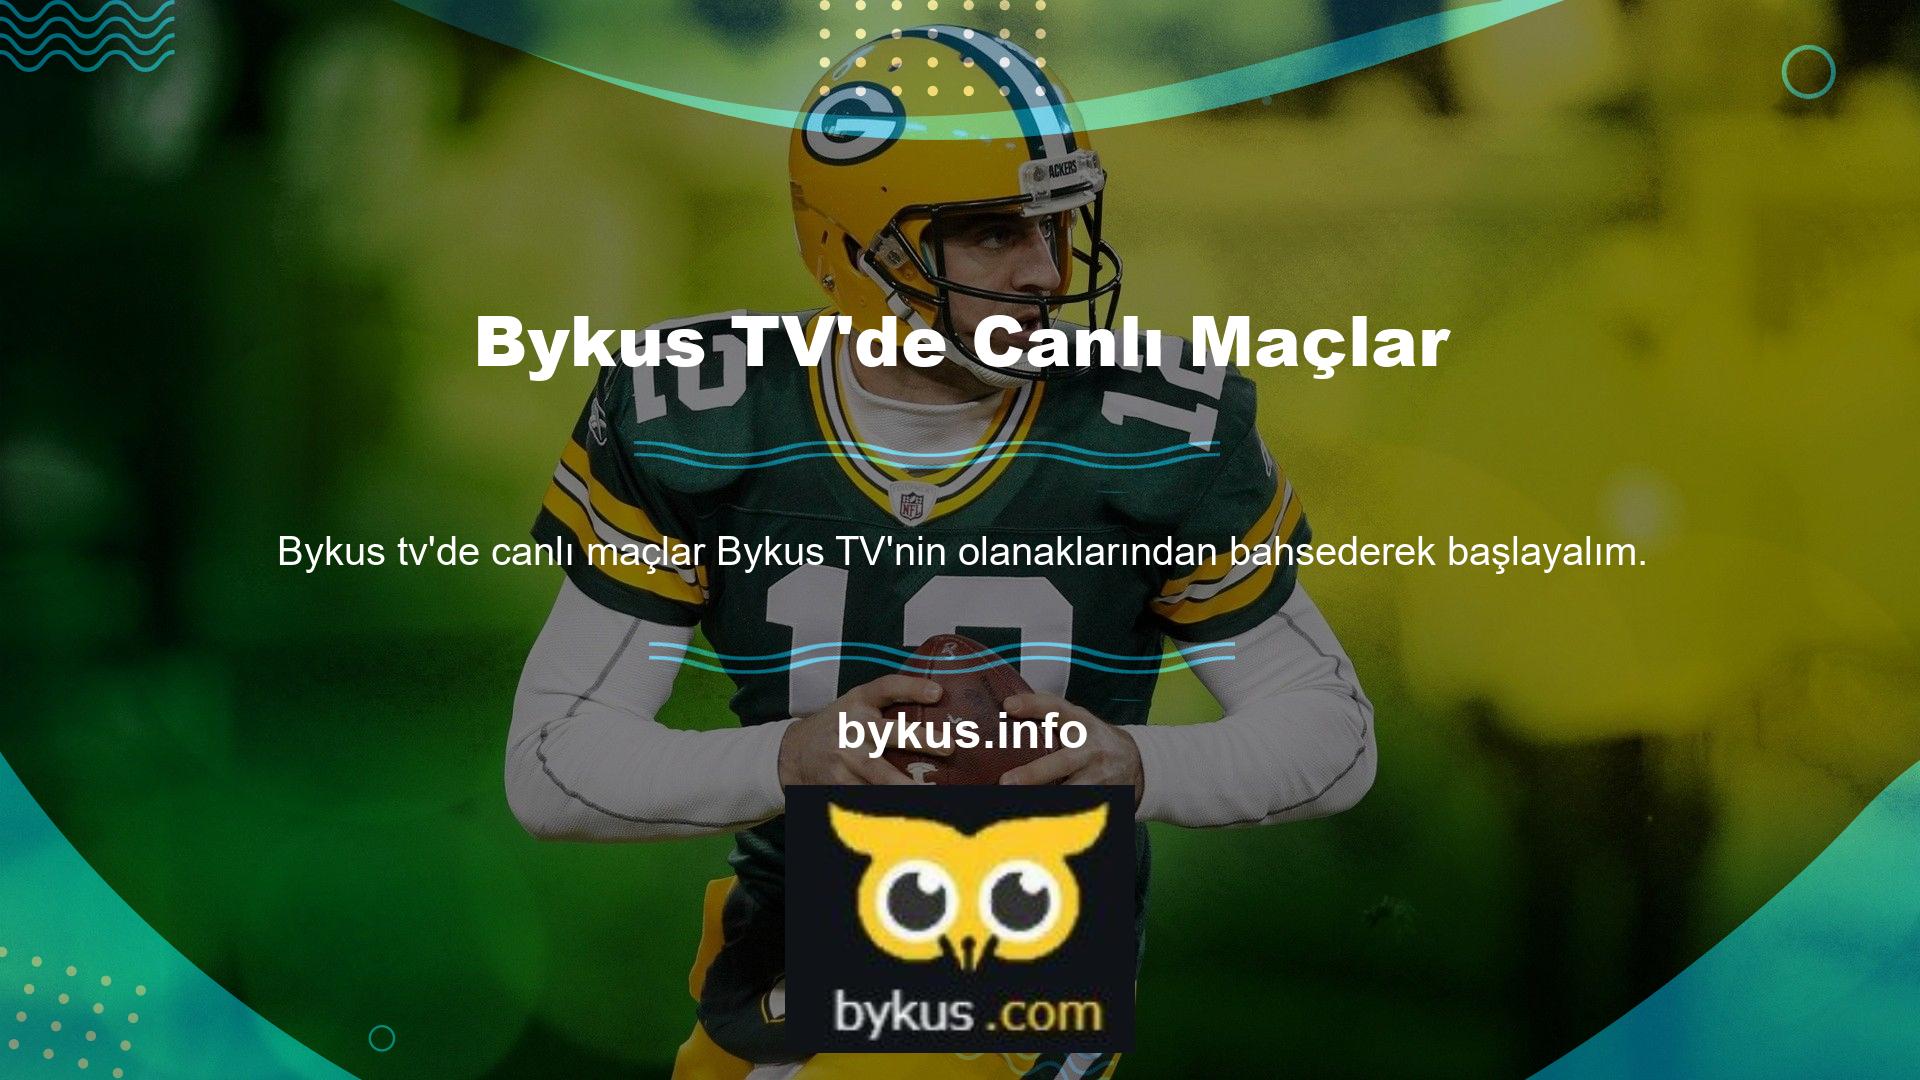 Bu özellik, Bykus web sitesinde spor müsabakalarını izlemenizi sağlayan bir sistem ve uygulamadır